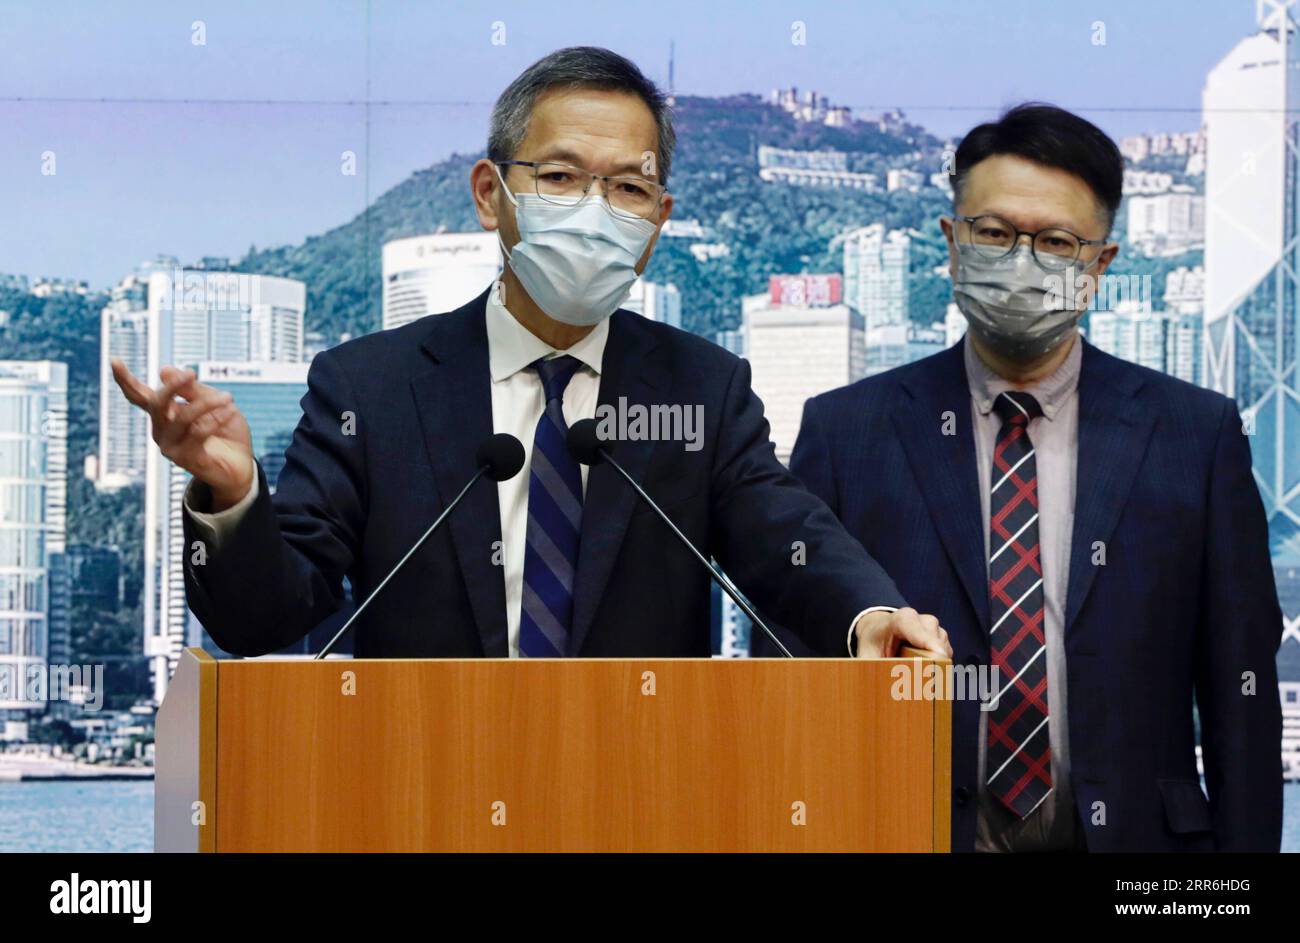 210216 -- HONG KONG, 16. Februar 2021 -- Wallace Lau L, der Vorsitzende des Beratungsgremiums für COVID-19-Impfstoffe in Hongkong, spricht auf einer Pressekonferenz in Hongkong, Südchina, am 16. Februar 2021. Das Beratungsgremium Hongkongs zu COVID-19-Impfstoffen beschloss am Dienstag, den von Sinovac Biotech hergestellten Impfstoff für die Notfallanwendung zu empfehlen. Experten des Gremiums sind der Ansicht, dass der inaktivierte Impfstoff von Sinovac mehr Nutzen als Risiken bringen kann, und werden ihre Ratschläge der HKSAR-Regierung der Sonderverwaltungsregion Hongkong als Referenz vorlegen, sagte Wallace Lau, der Konvent des Gremiums, bei einem Pressebriefing. C Stockfoto